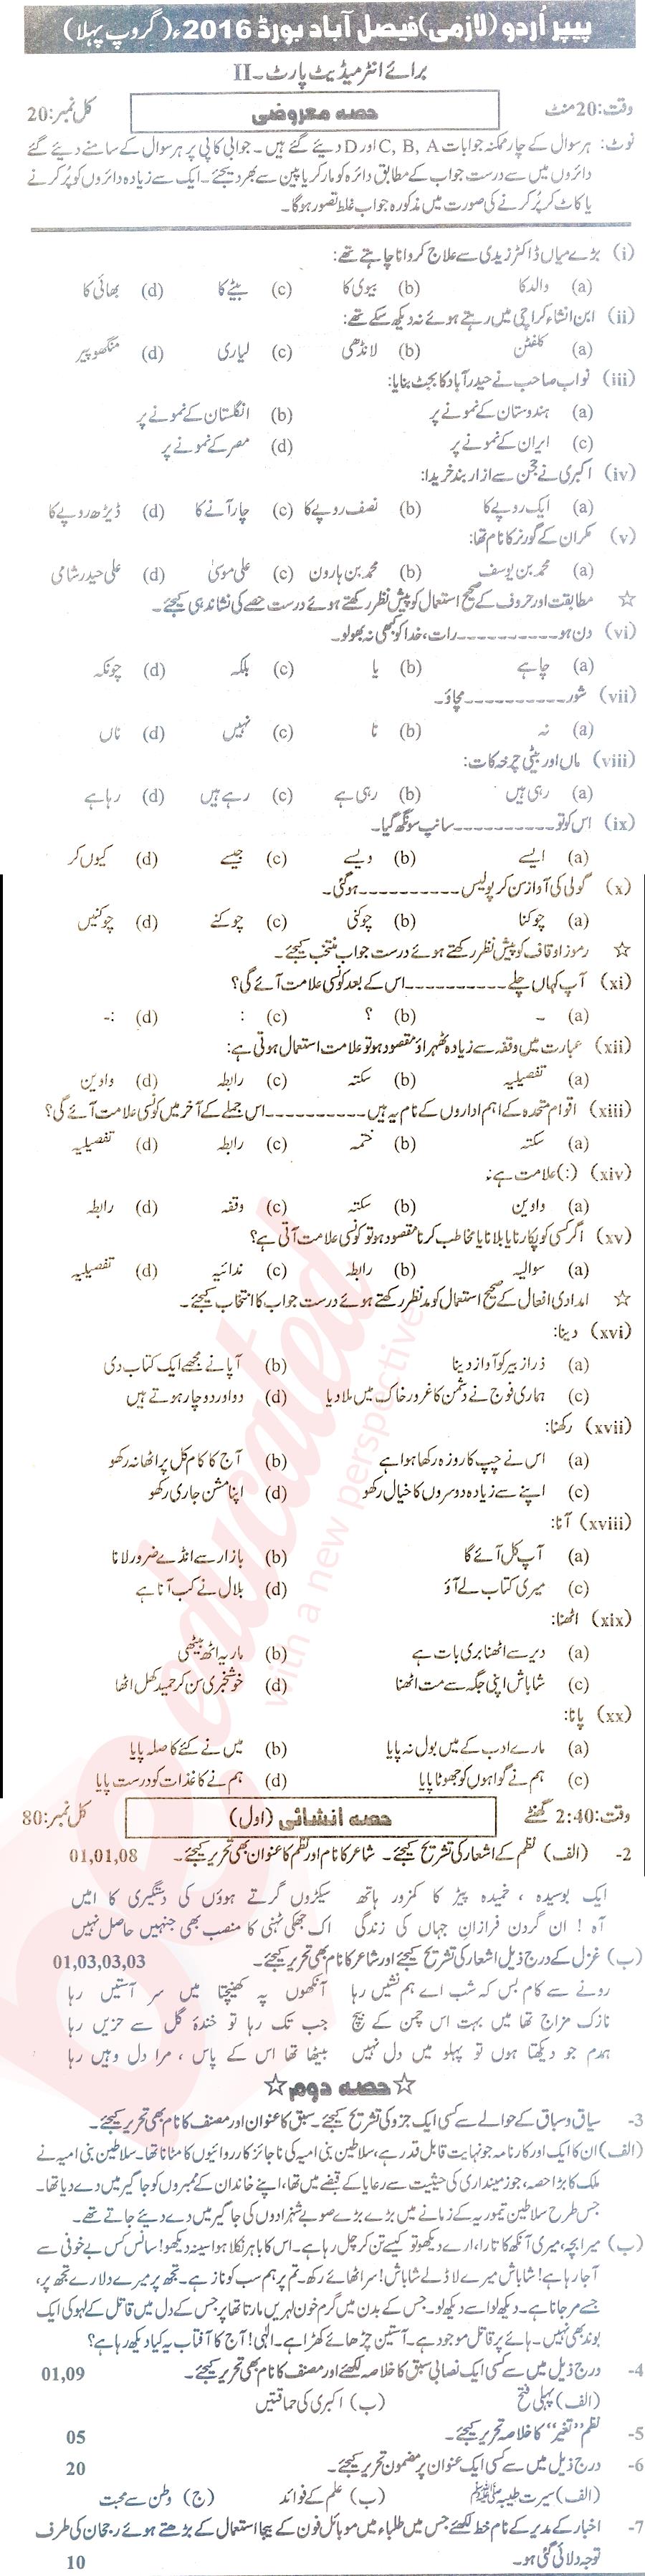 Urdu 12th class Past Paper Group 1 BISE Faisalabad 2016